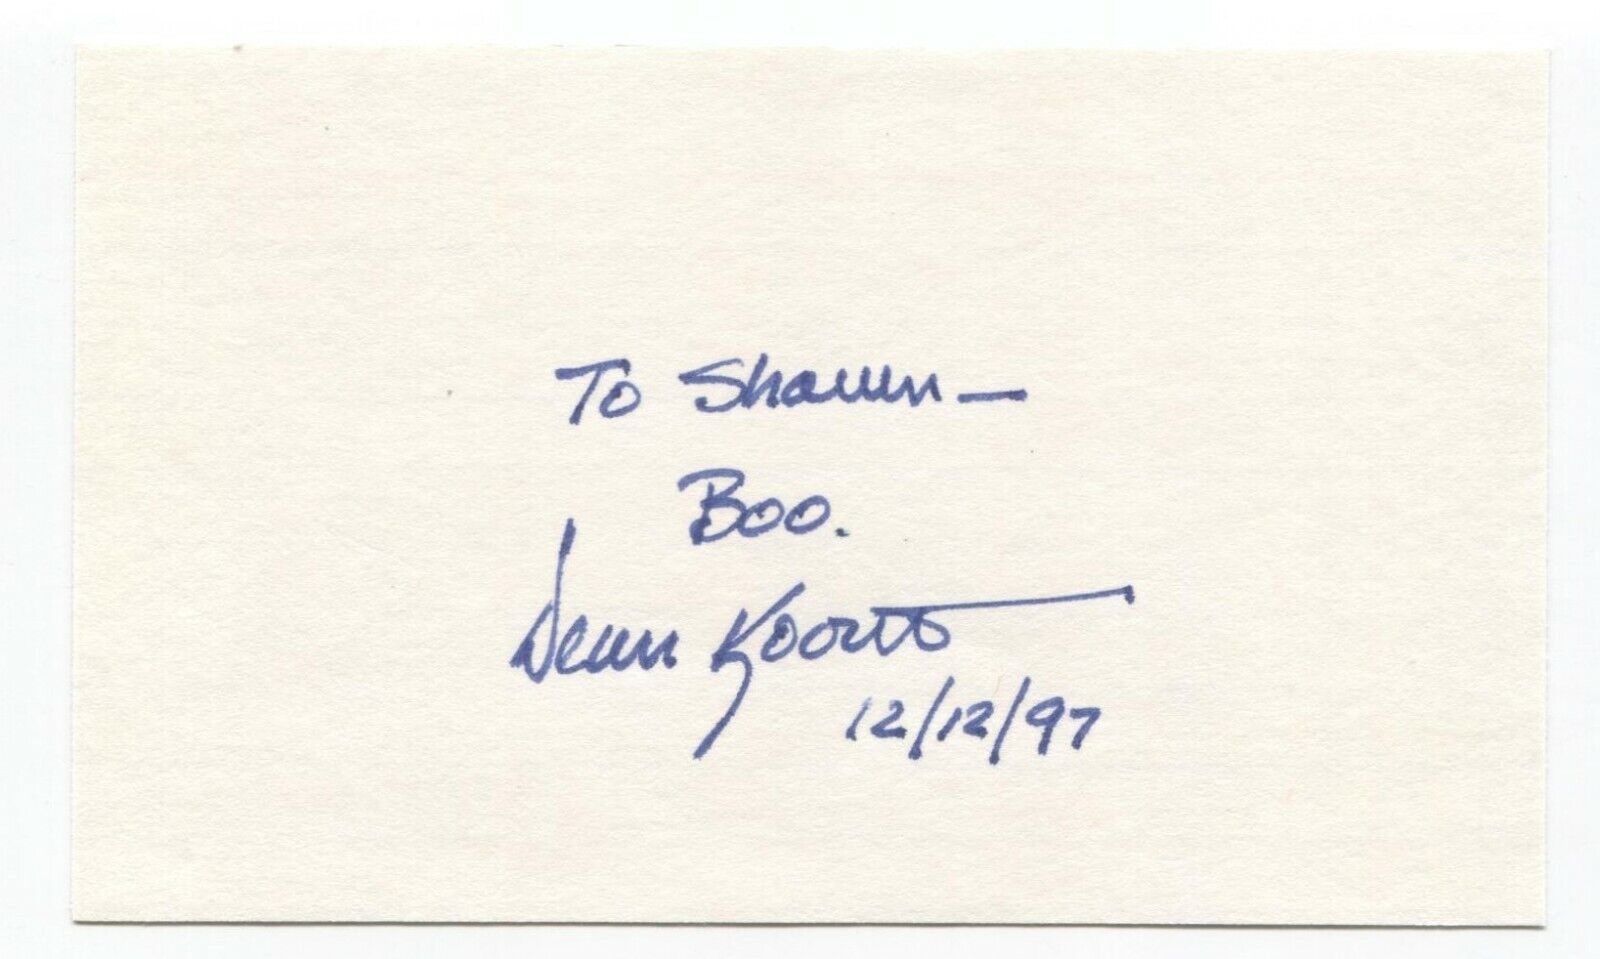 Dean Koontz Signed 3x5 Index Card Autographed Vintage Signature Author